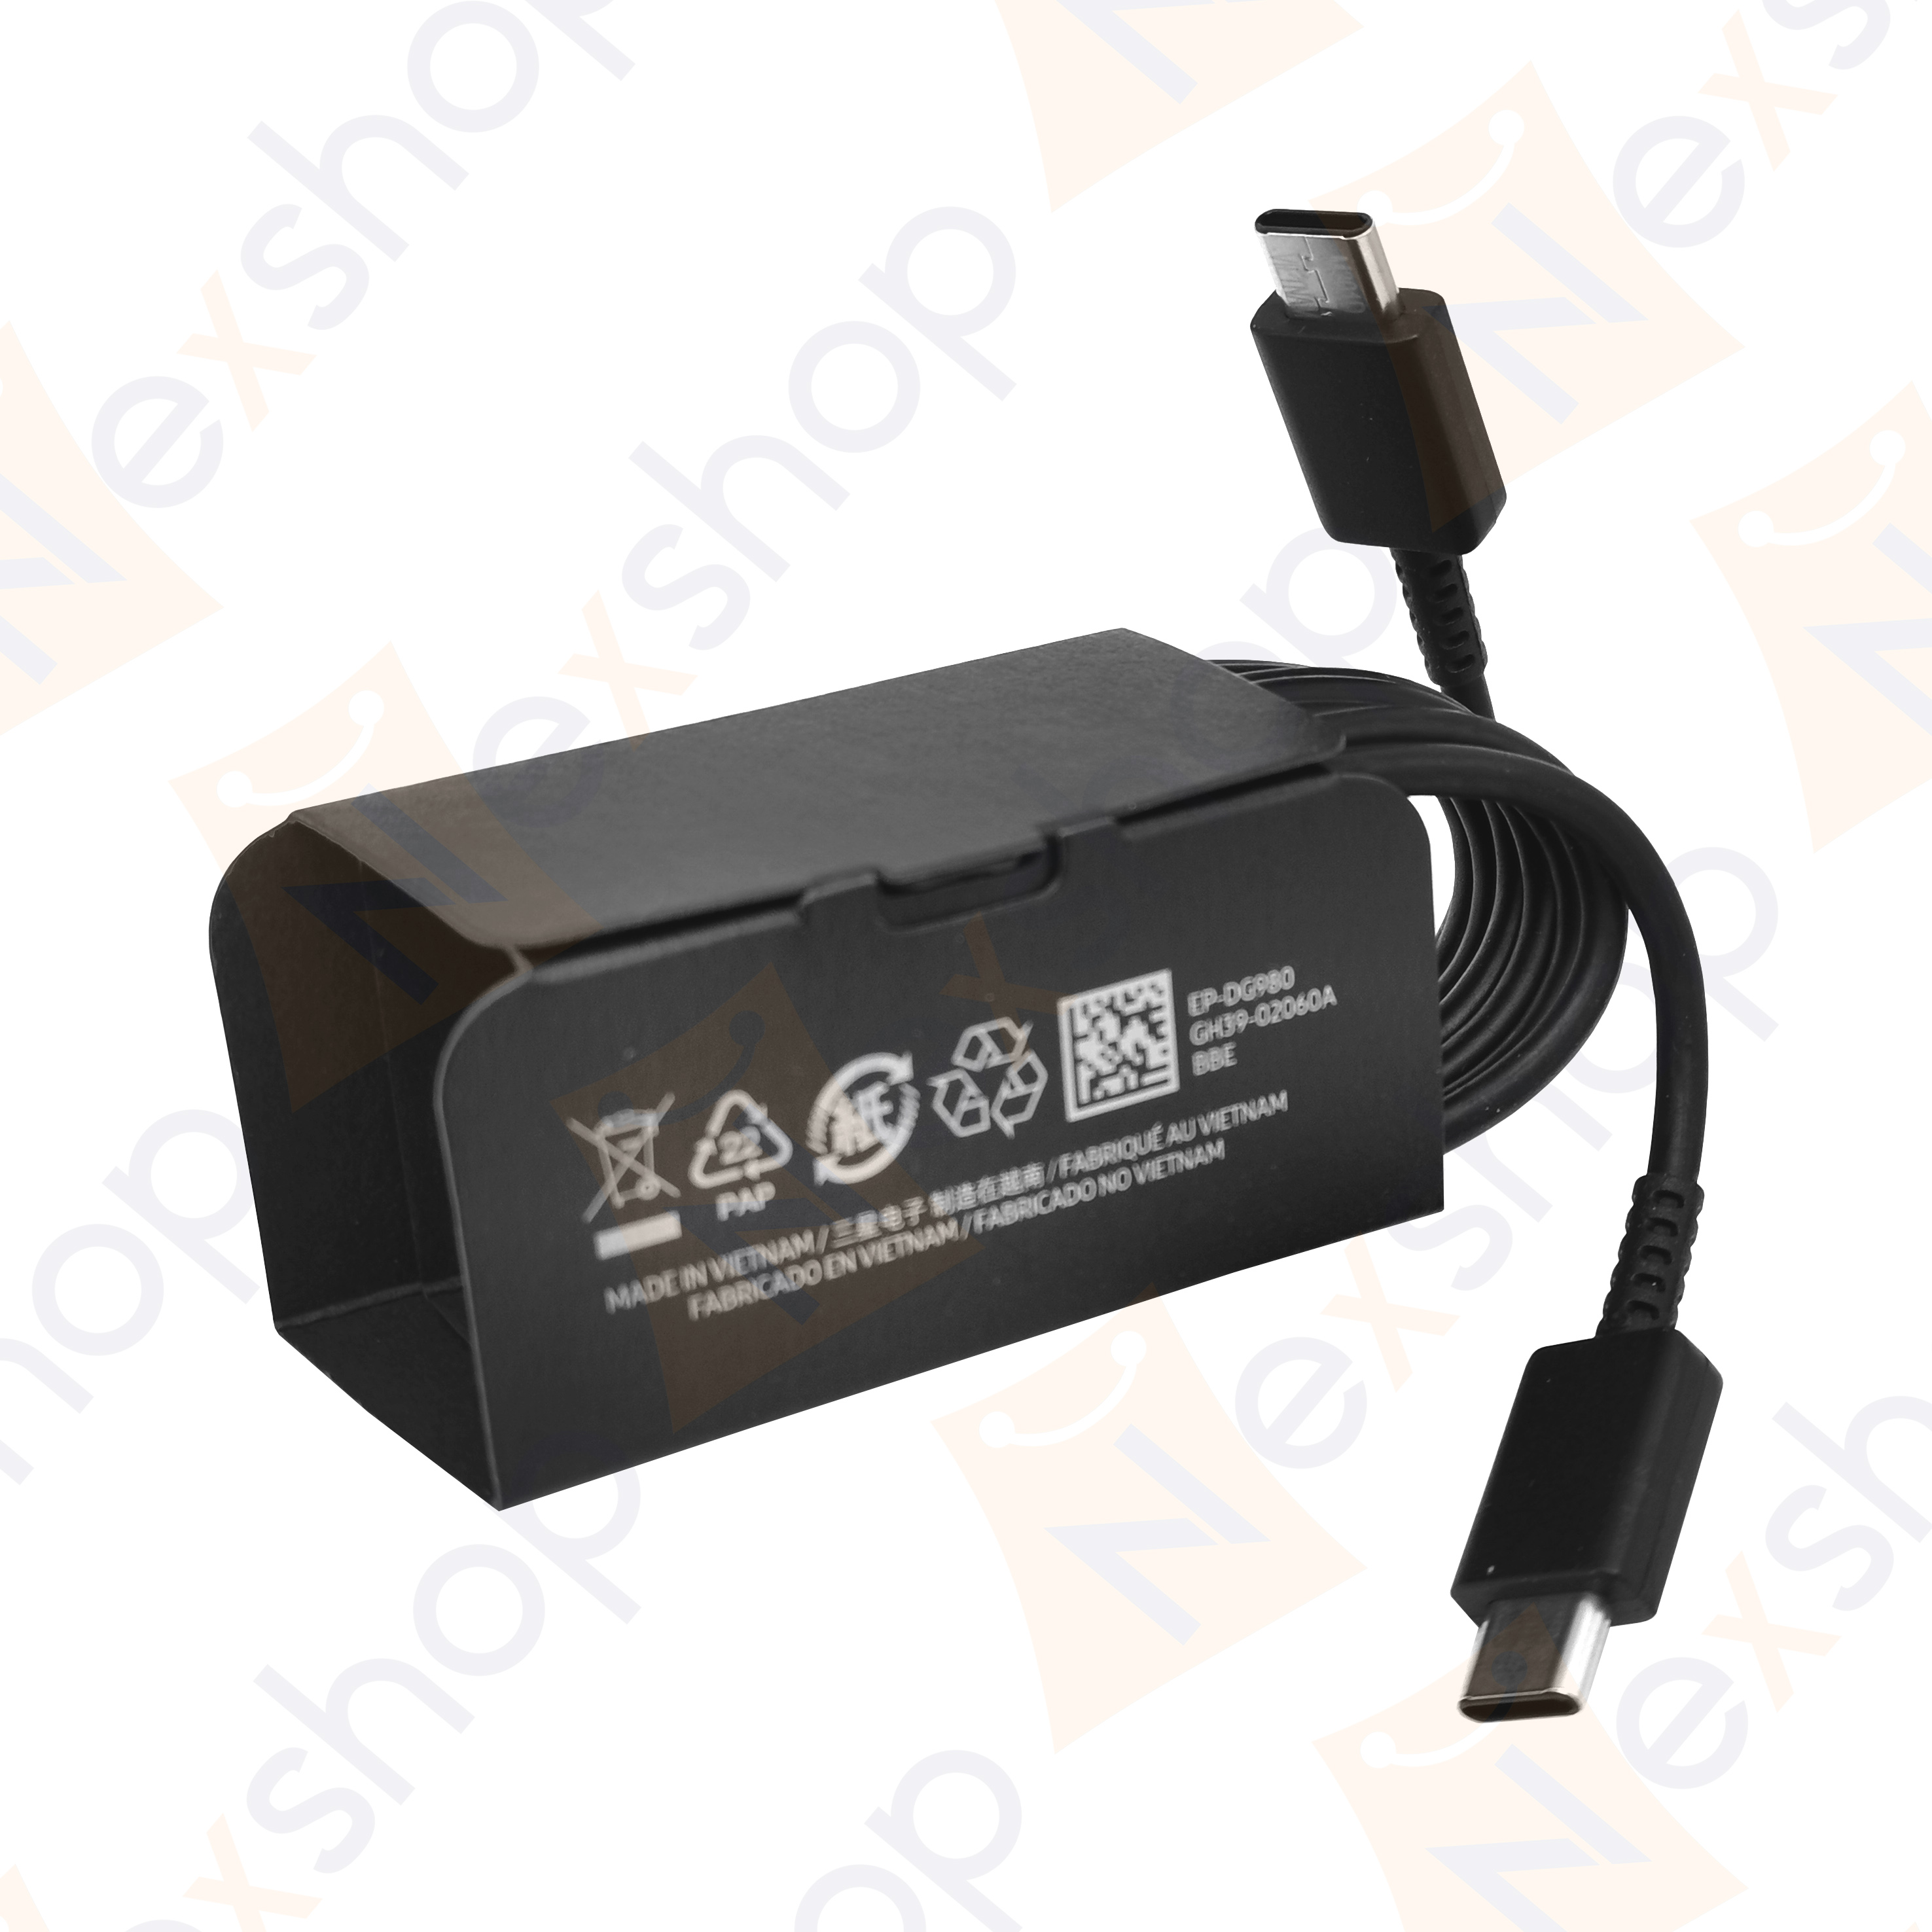 Chargeur + Cable USB-C pour Samsung S20 - S20 PLUS - S20 ULTRA - S20 FE -  Cable Type USB-C 1 Metre Prise Murale Noir Phonillico®